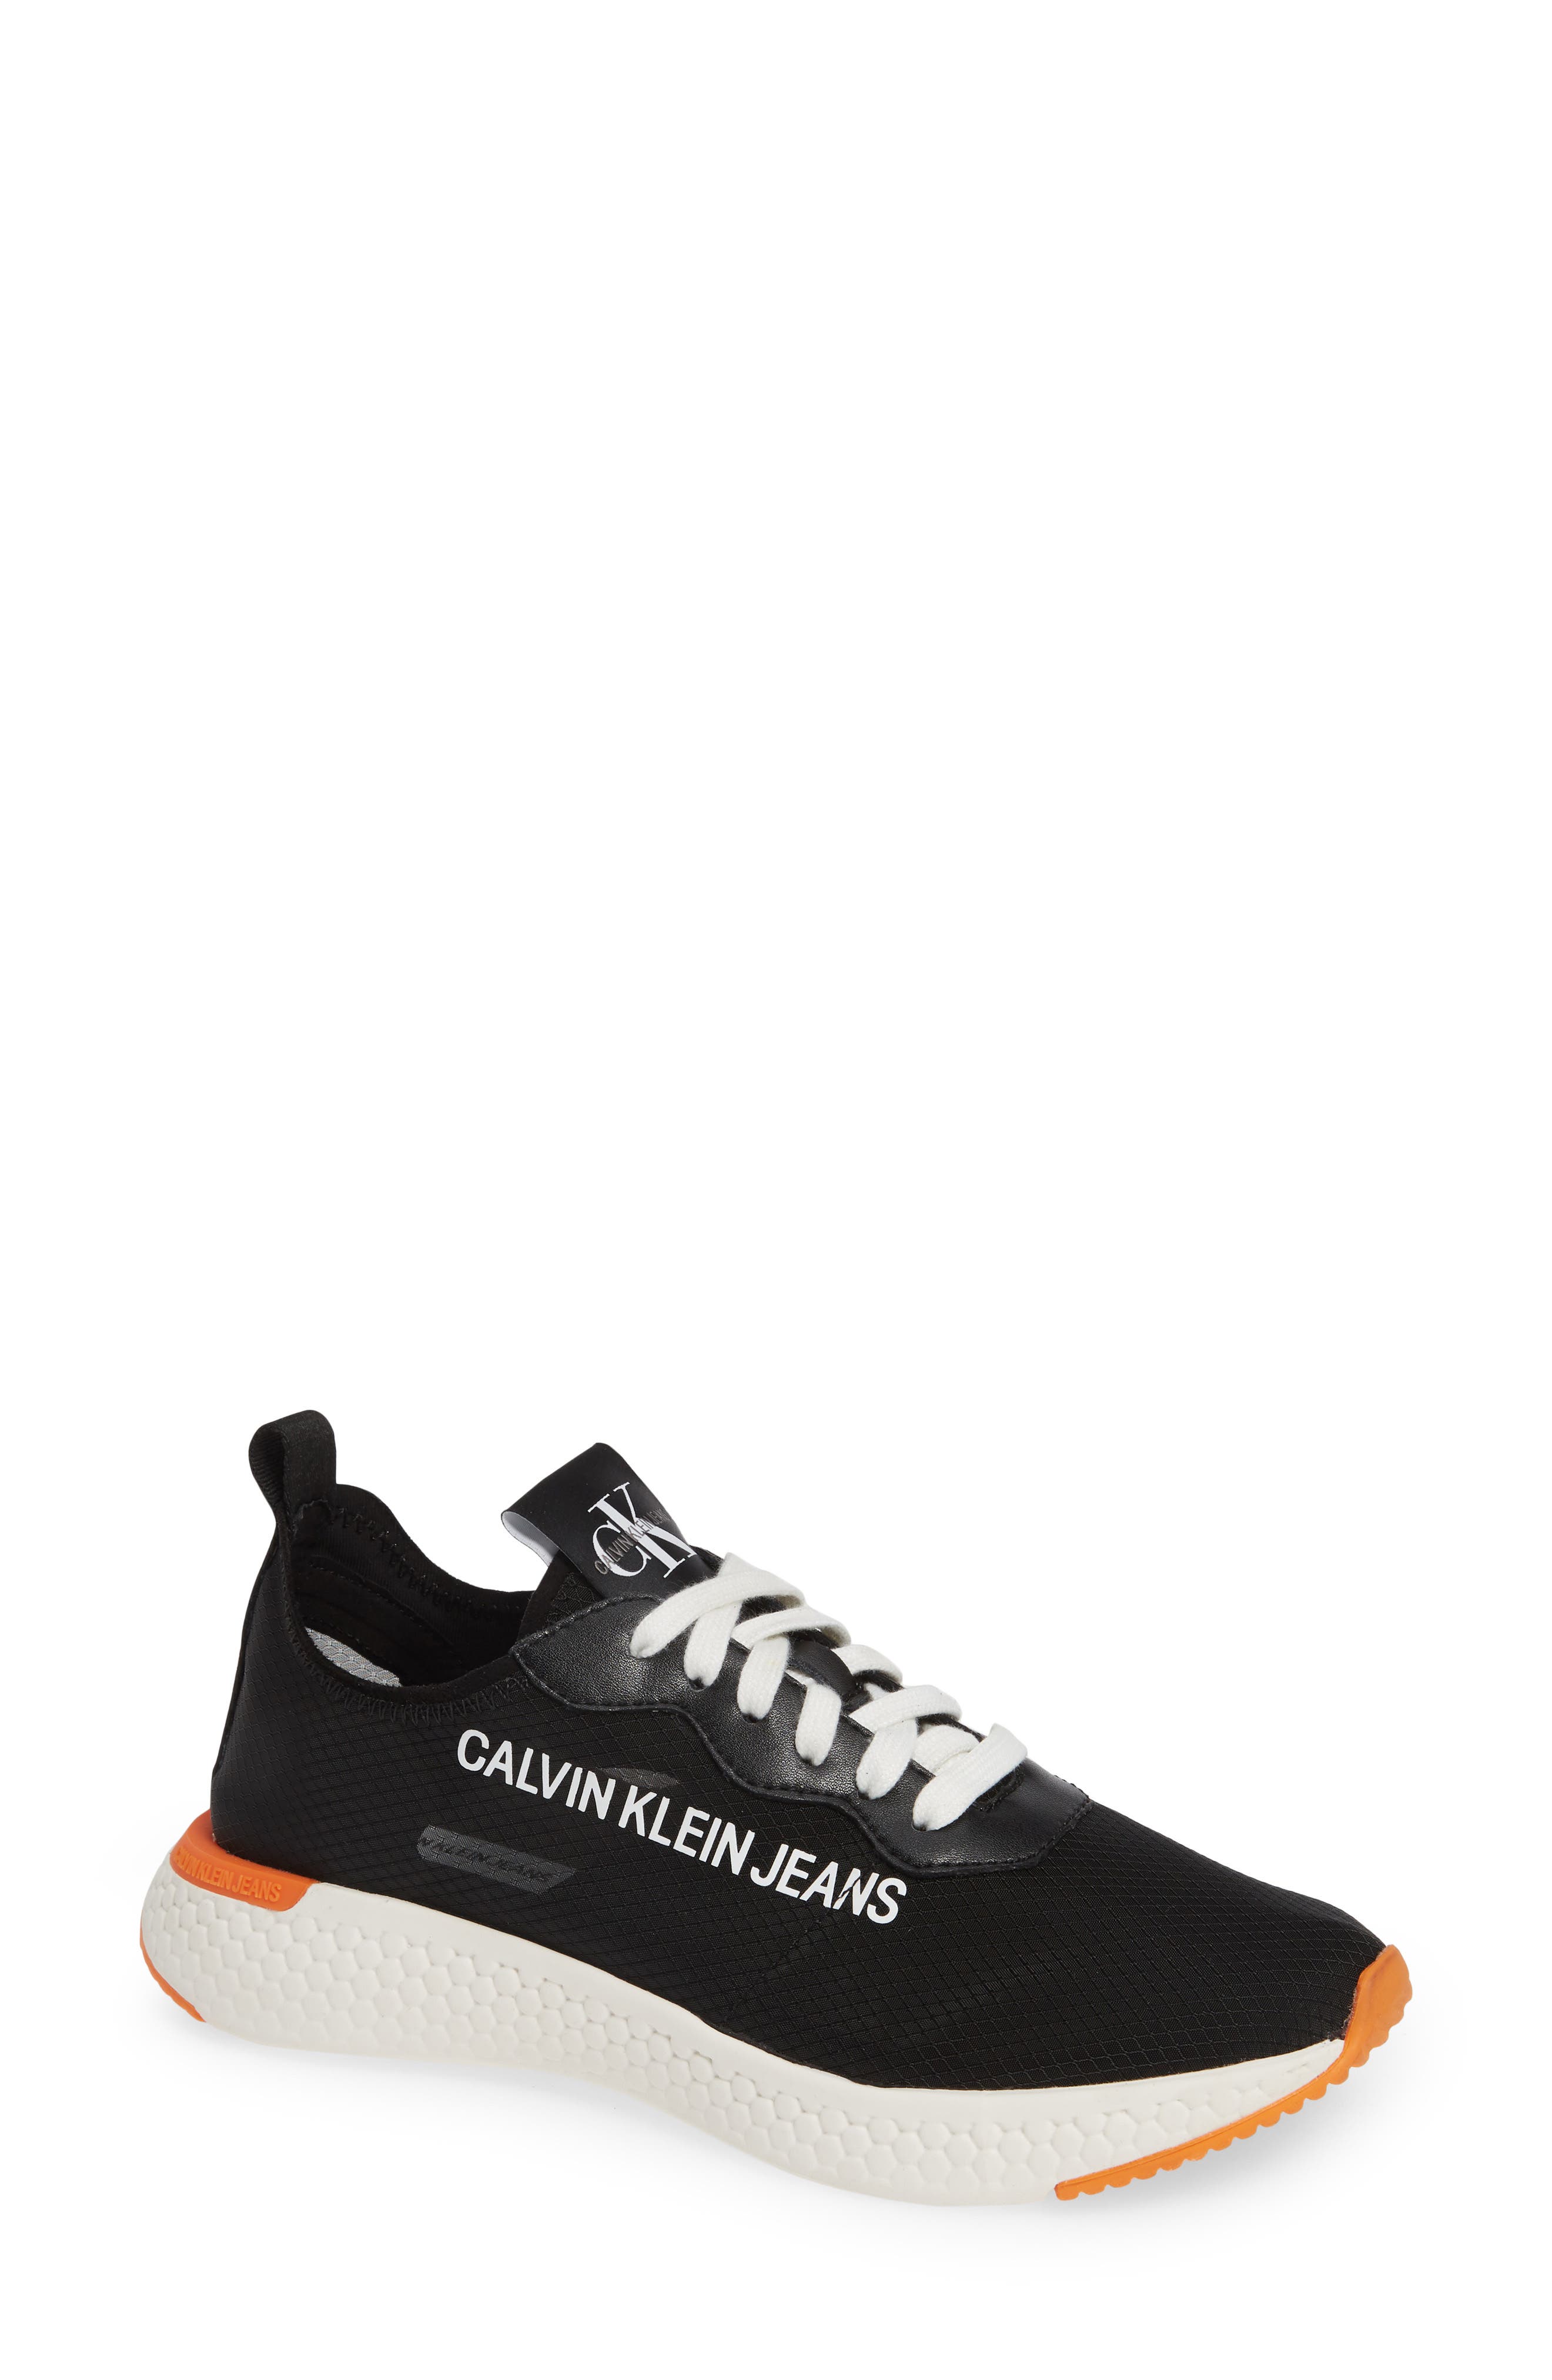 calvin klein logo sneakers